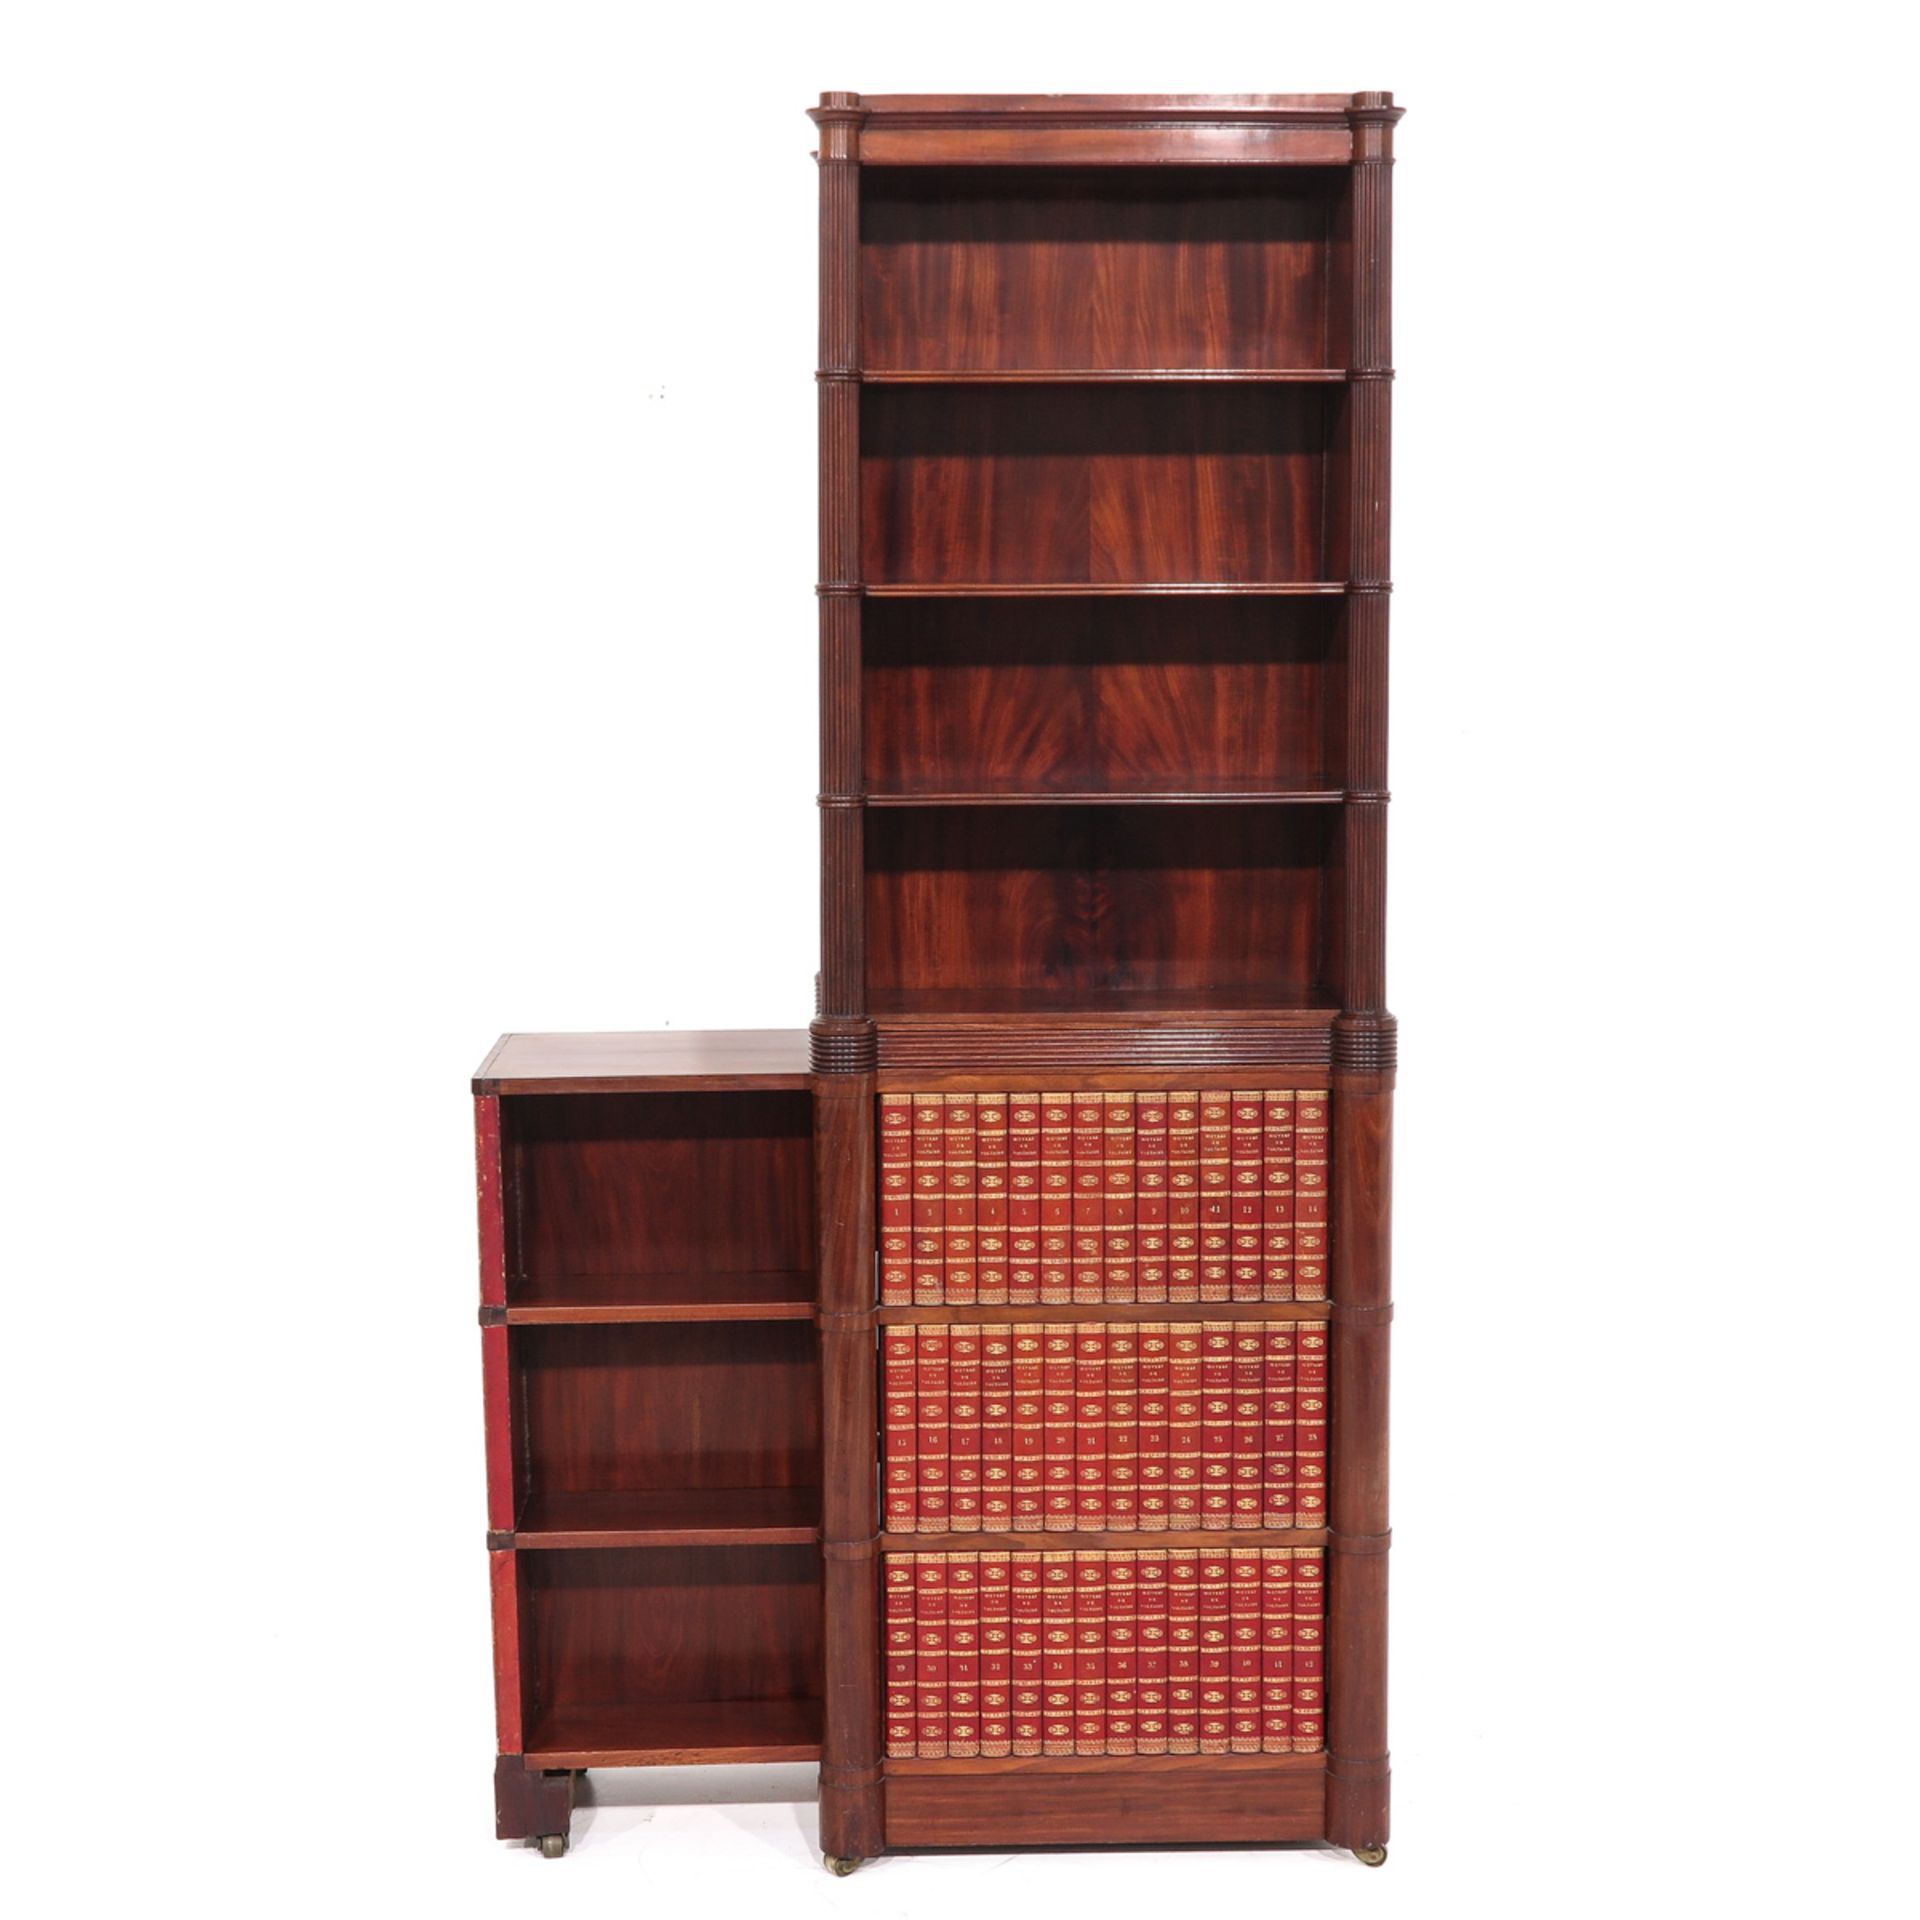 A Mahogany Bookcase - Image 3 of 10